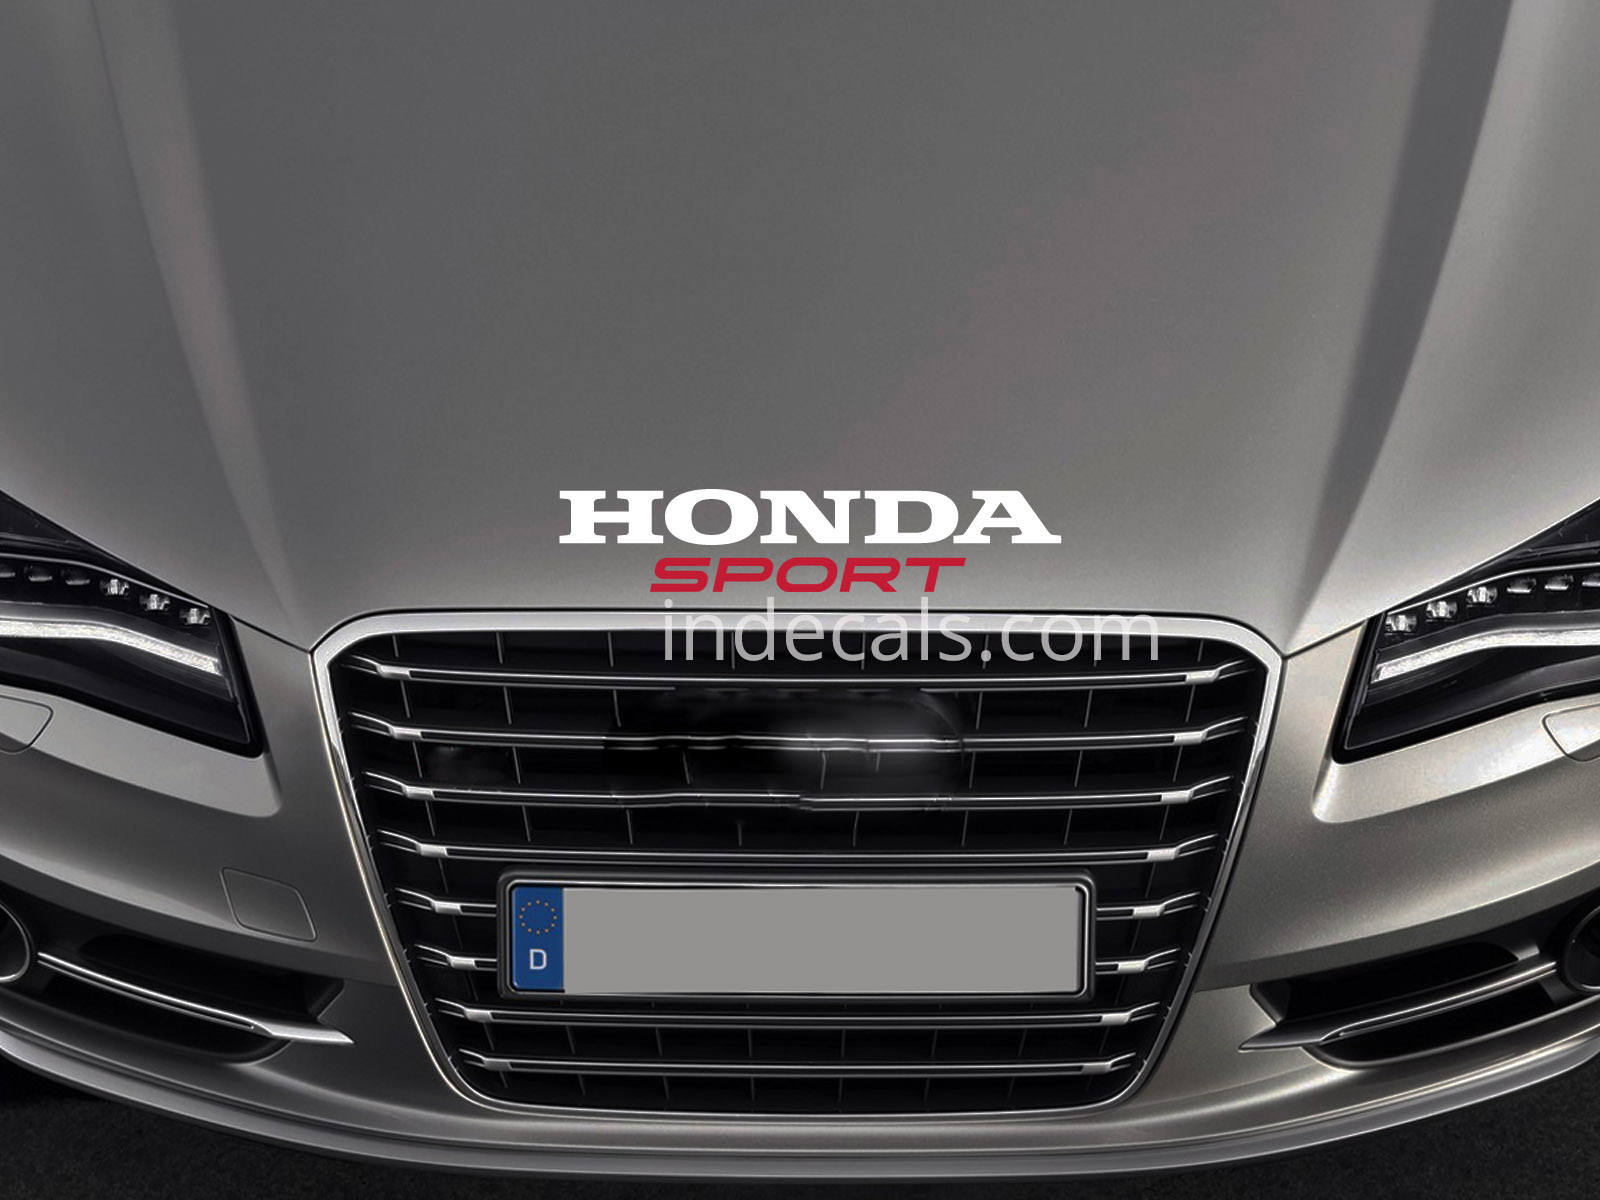 1 x Honda Sport Sticker for Bonnet - White & Red